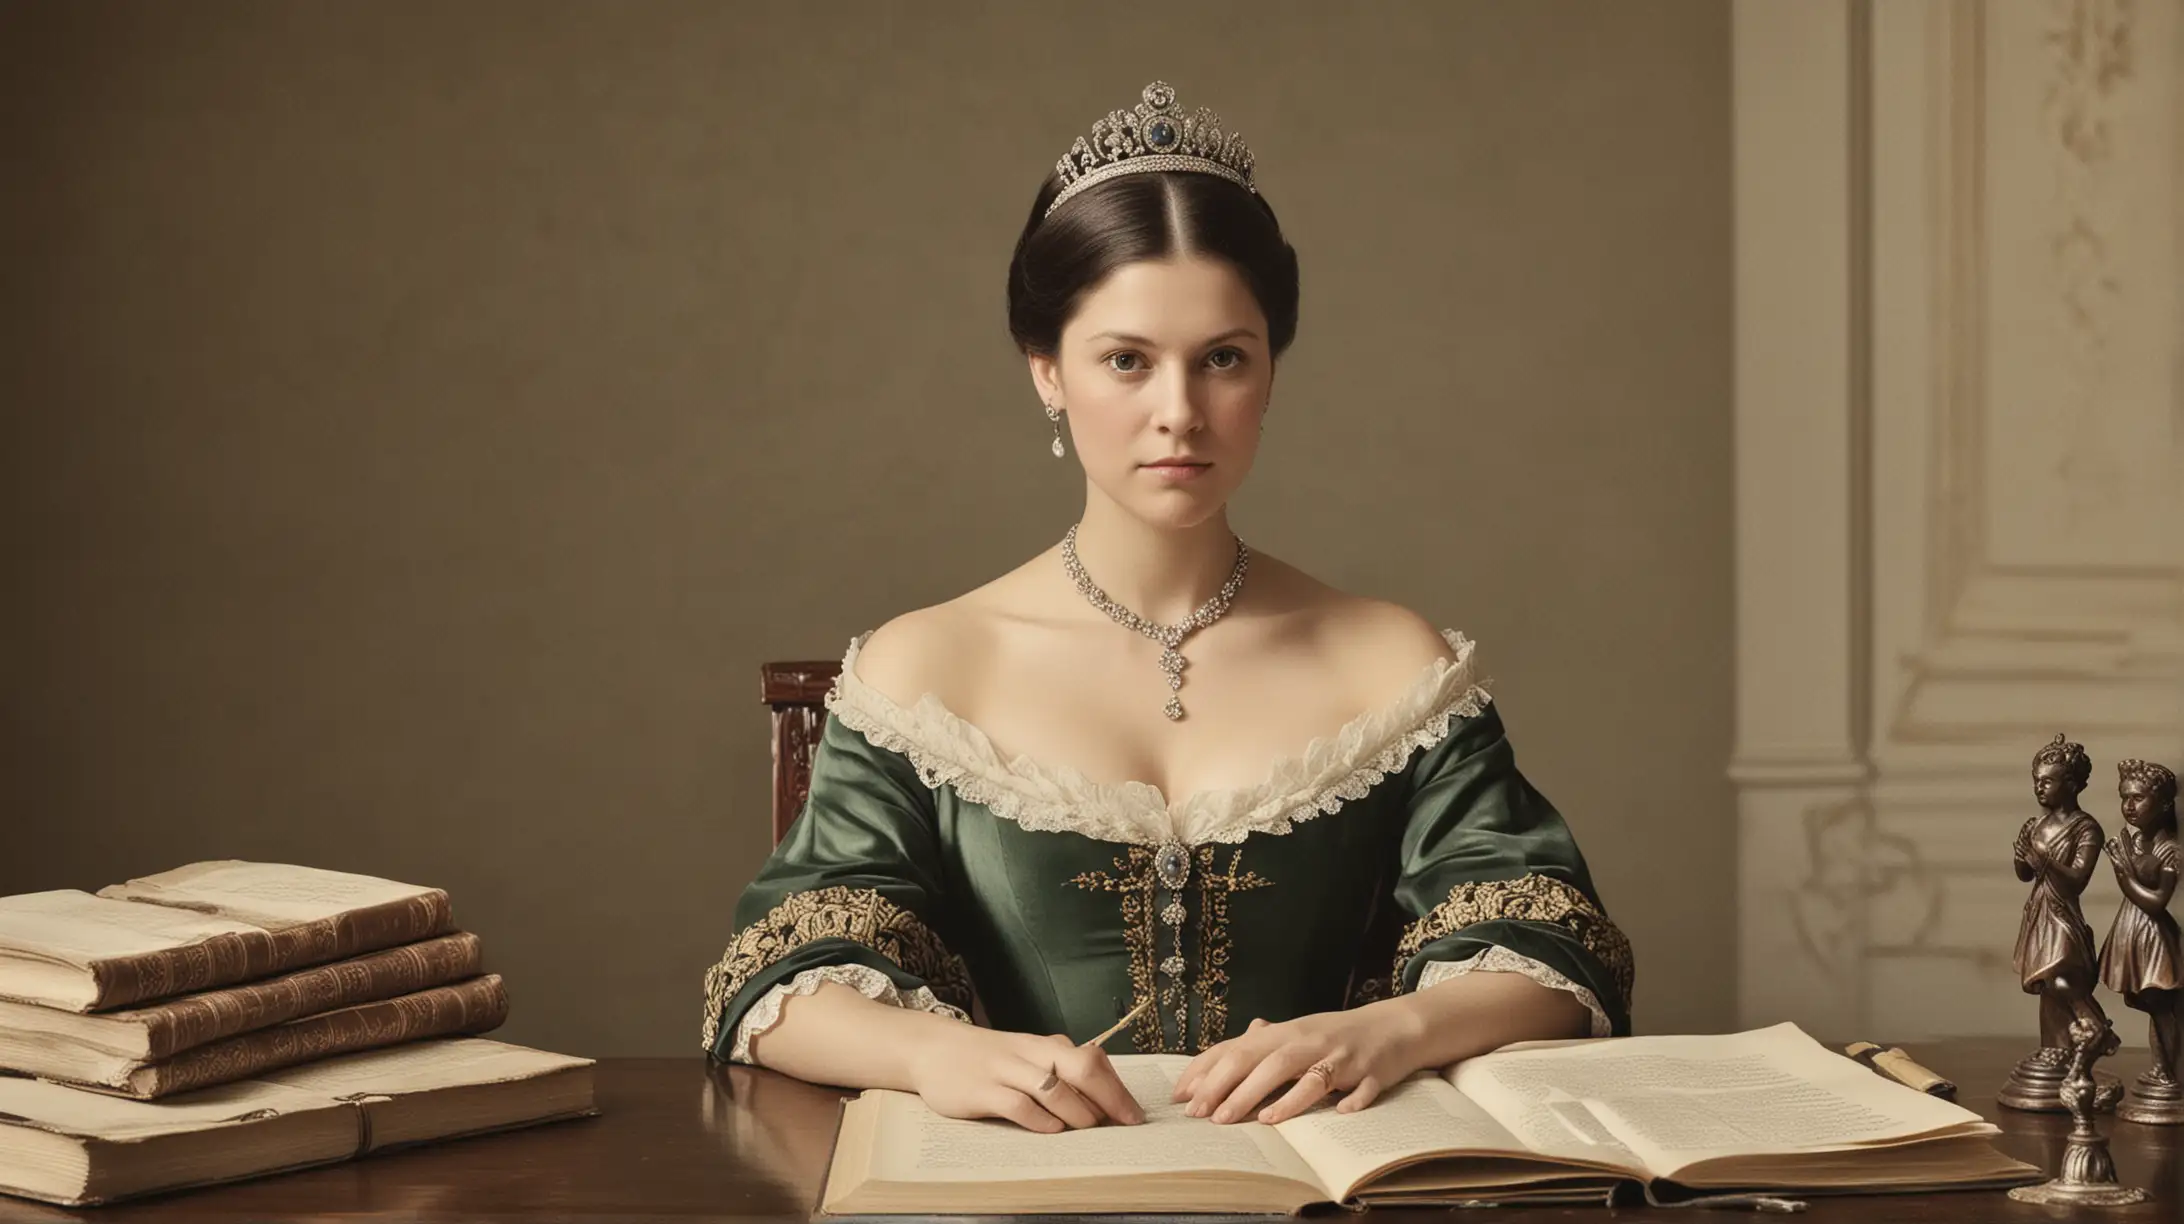 DAME UNA IMGEN REAL COMO TOMADA CON UNA CAMARA PROFECIONAL 1819: La princesa Victoria y sus estudios